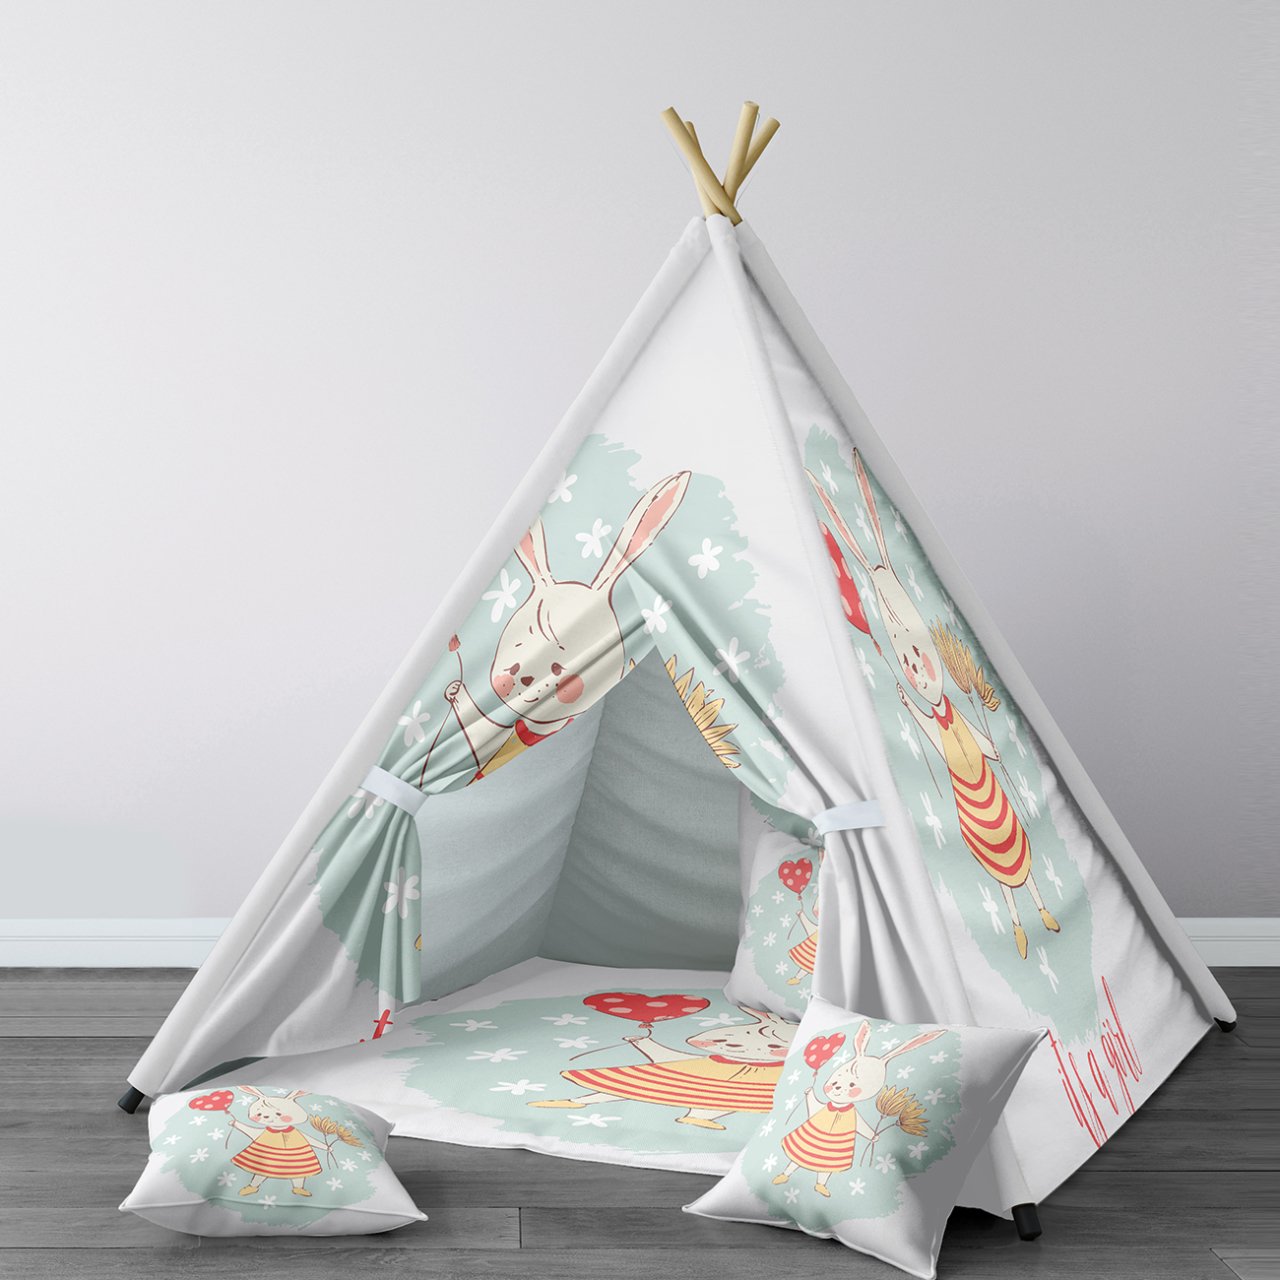 Tente-de-jeu-pliable-pour-fille-lapin-mignon-et-ballon-rouge-maison-de-jeu-Portable-tente